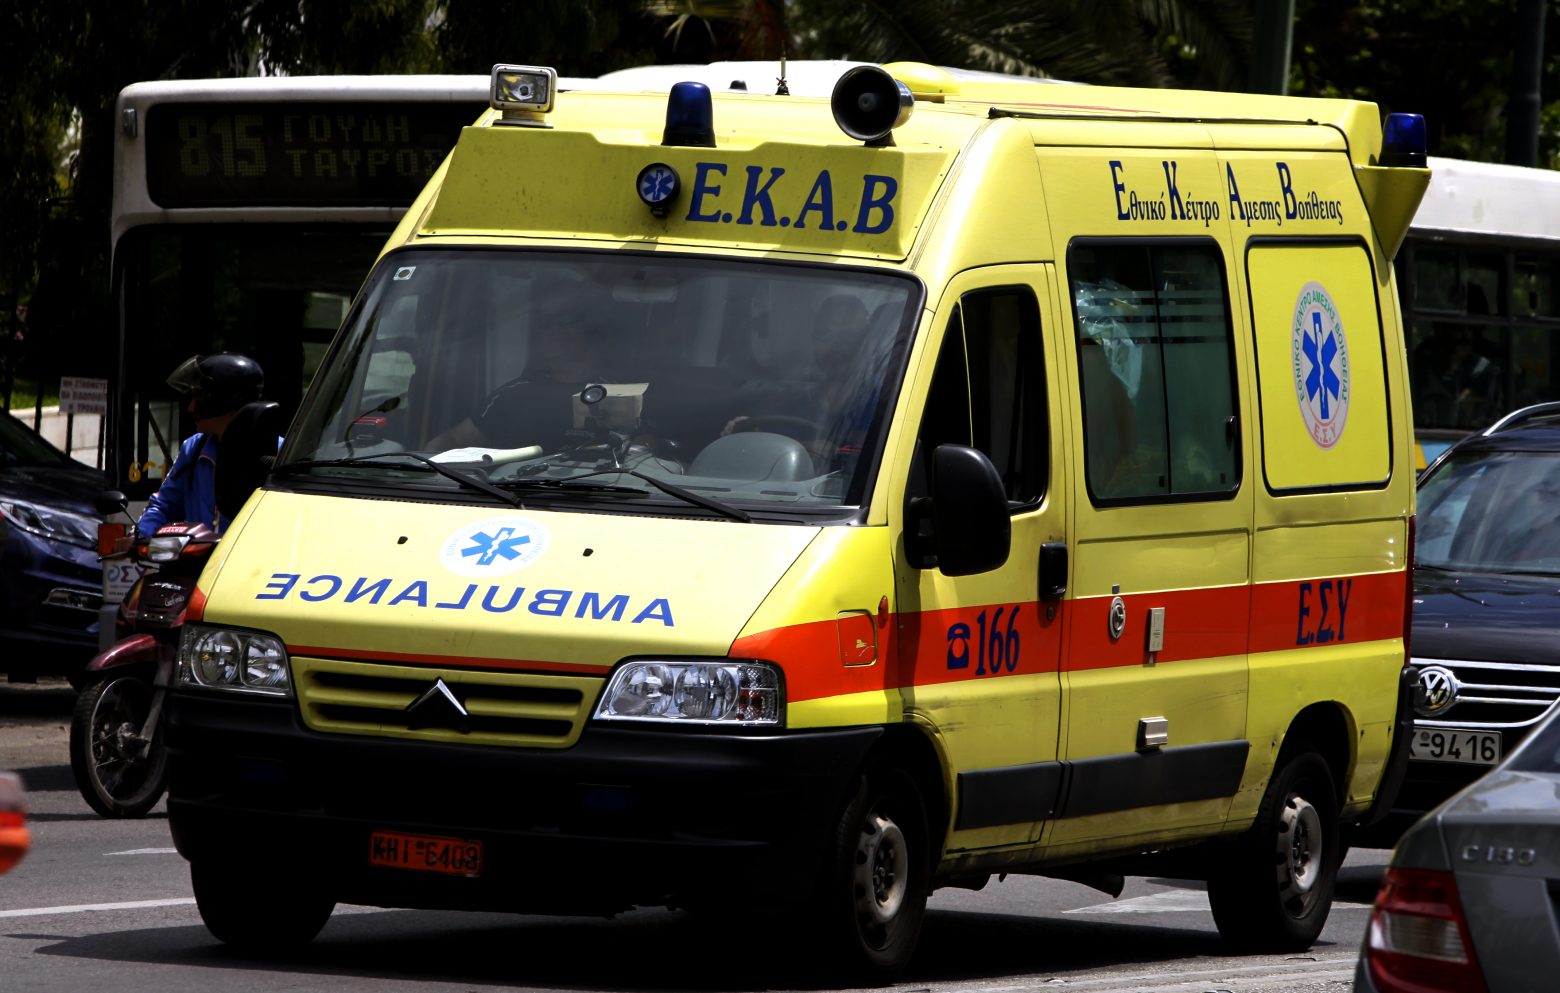 Βούλα: Αυτοκίνητο παρέσυρε 15χρονη μαθήτρια – Μεταφέρθηκε στο νοσοκομείο με βαριά κρανιοεγκεφαλική κάκωση (upd)